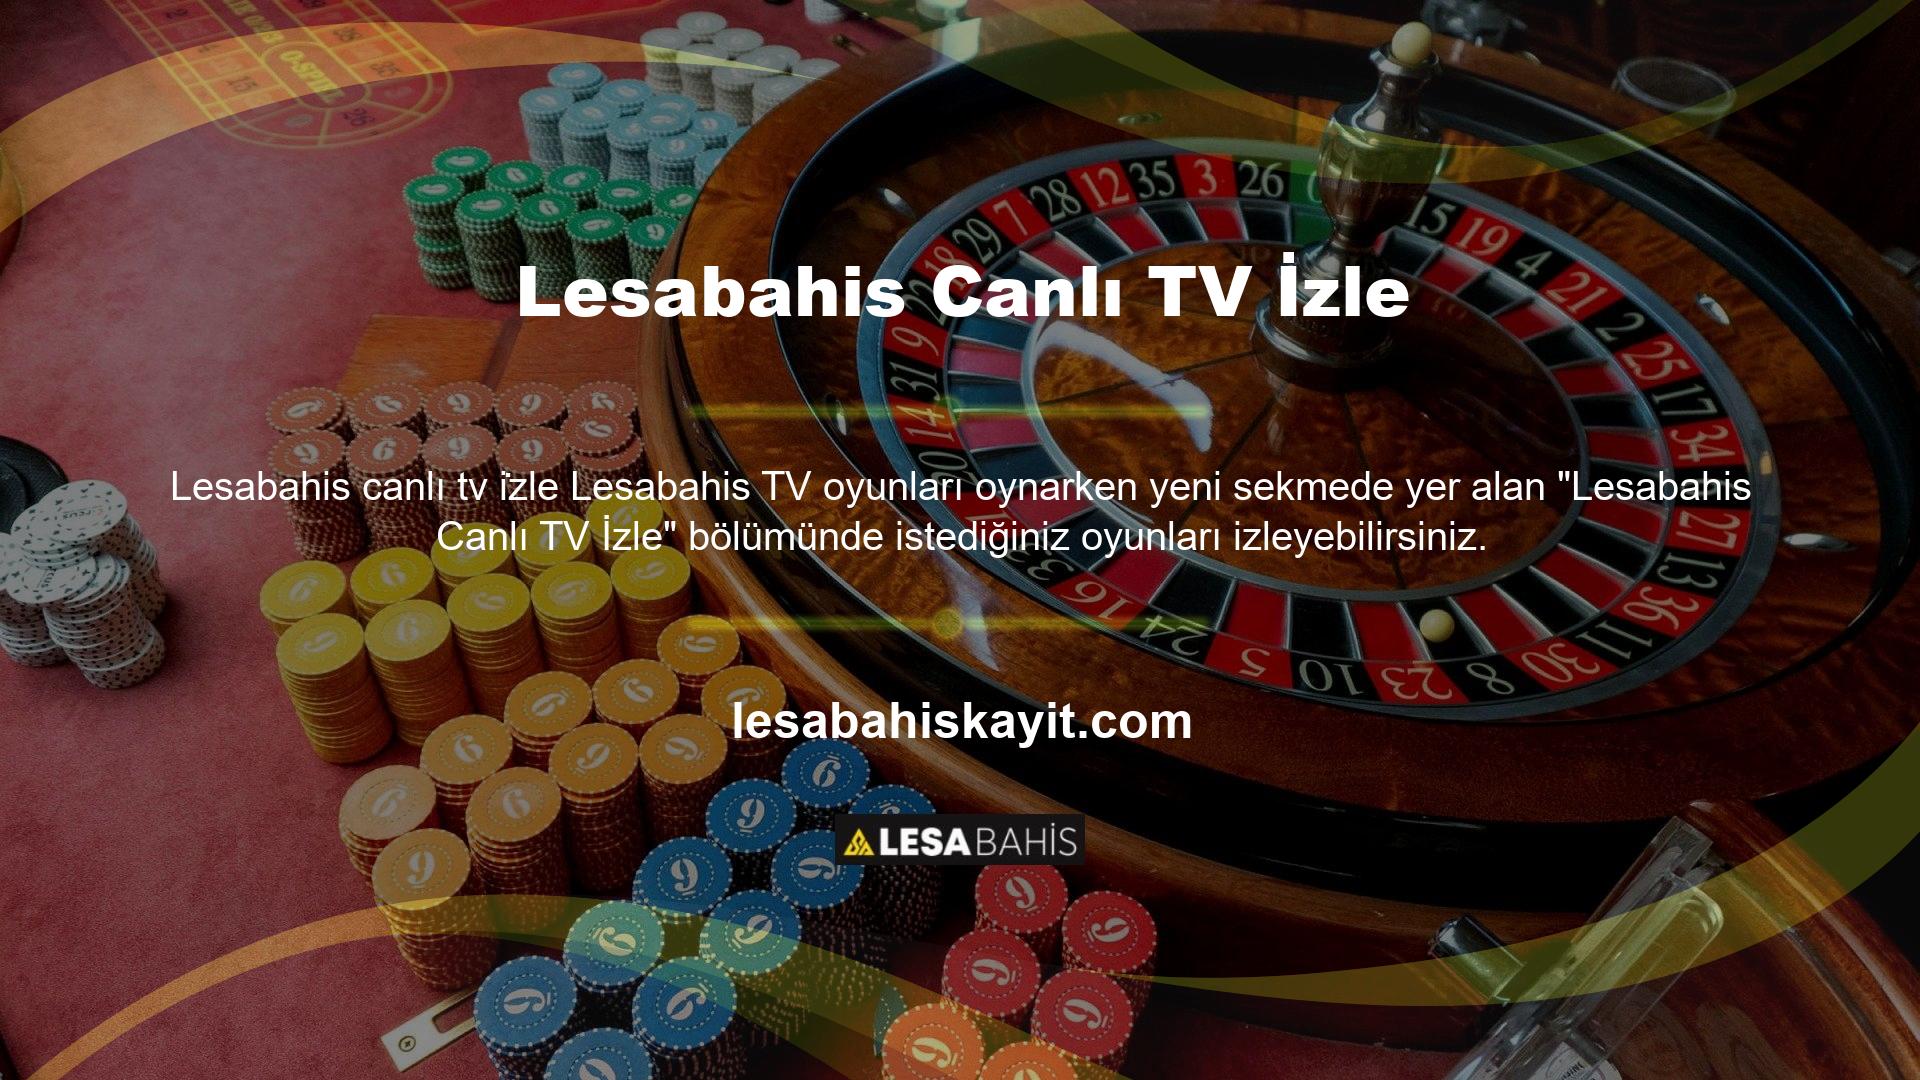 Bugün ücretsiz kaydolun ve Lesabahis canlı TV özelliklerinden yararlanın